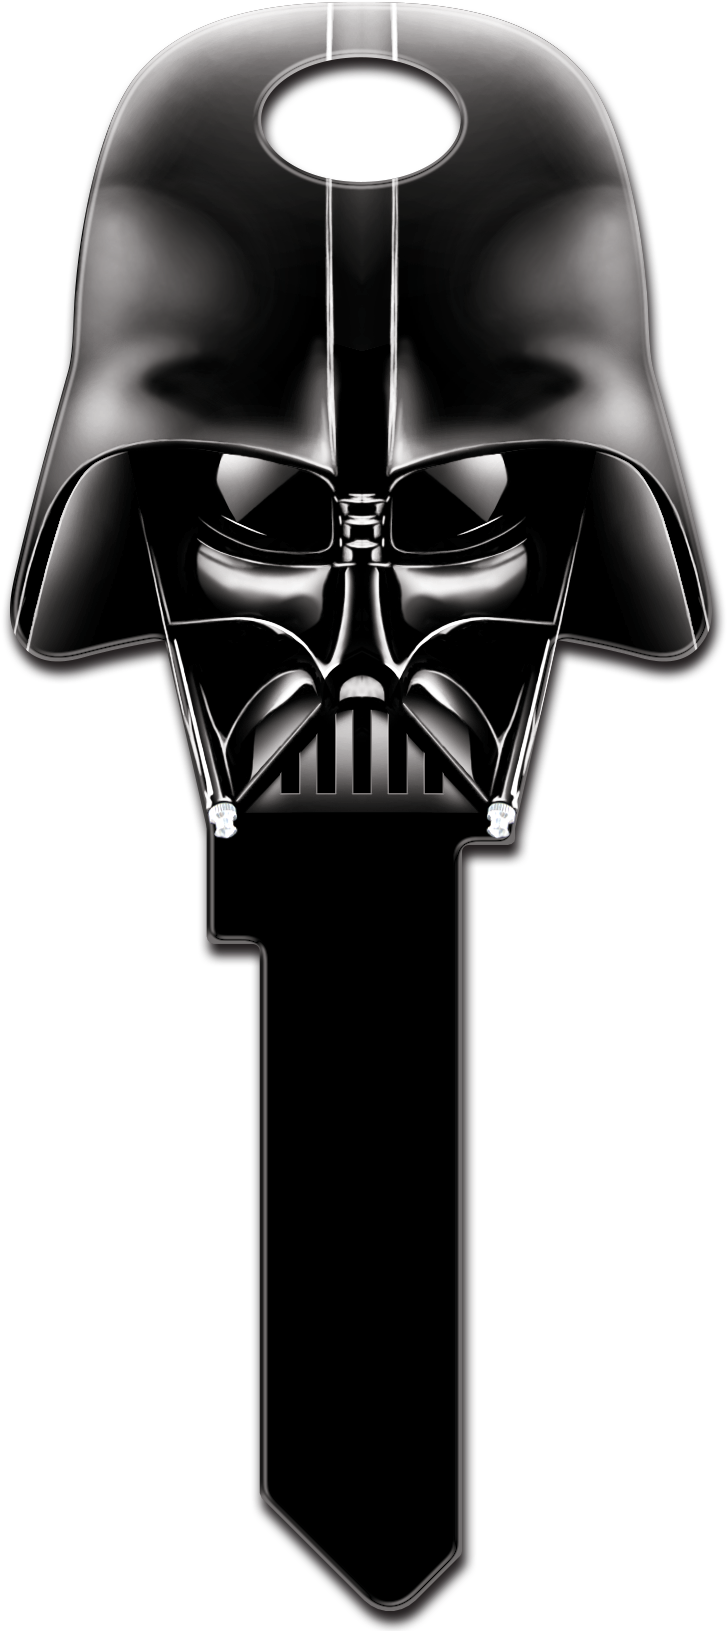 Darth Vader Helm PNG Gambar Latar Belakang